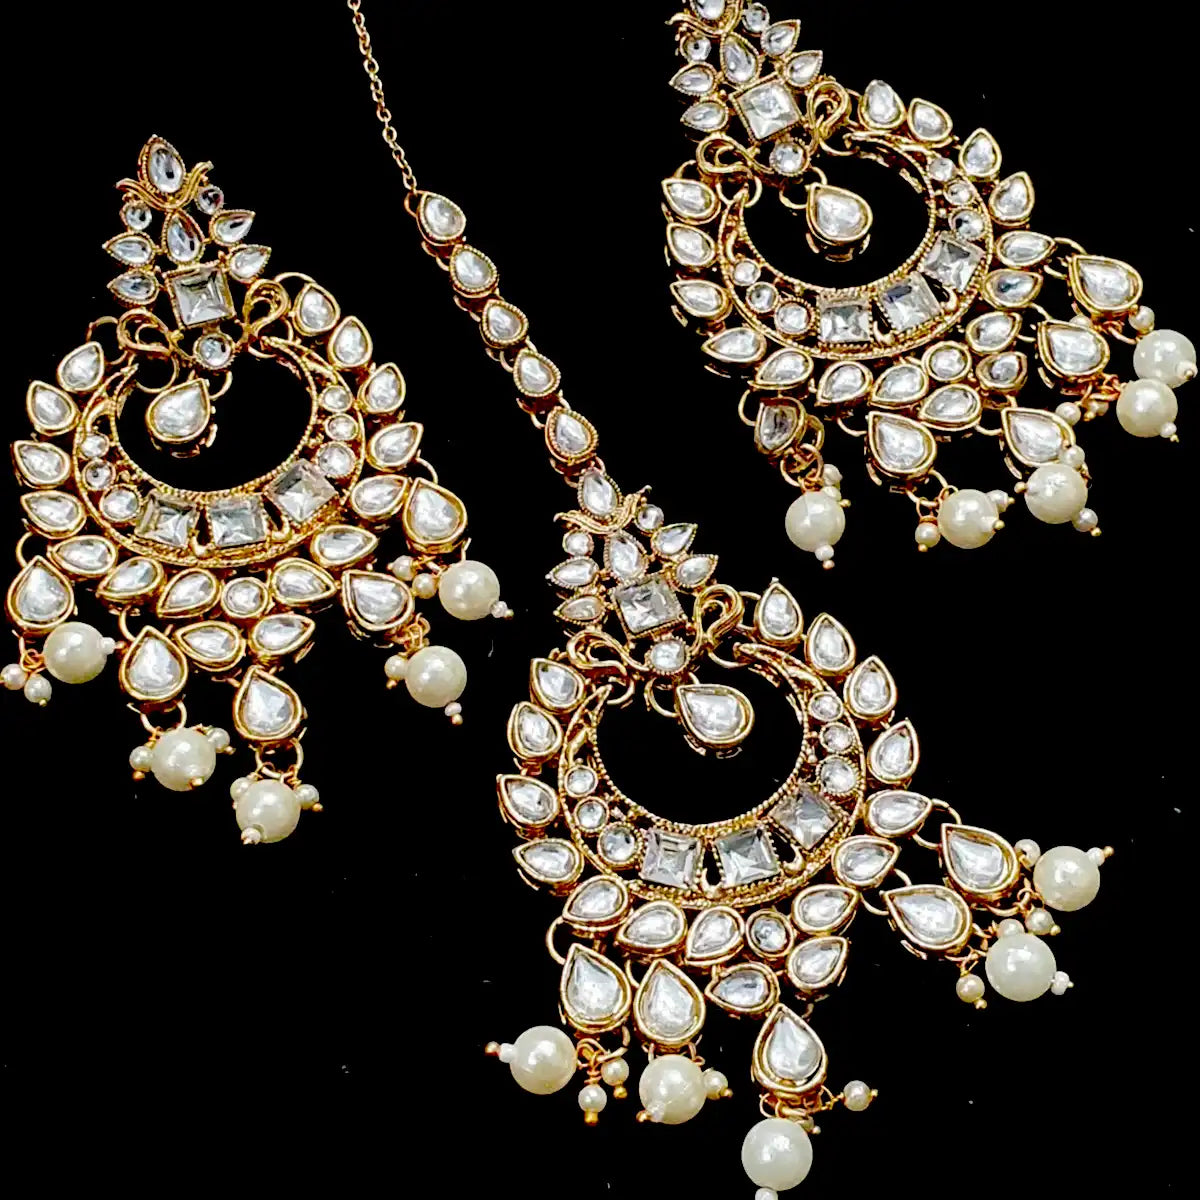 balas earrings price in Pakistan njc-005 silver